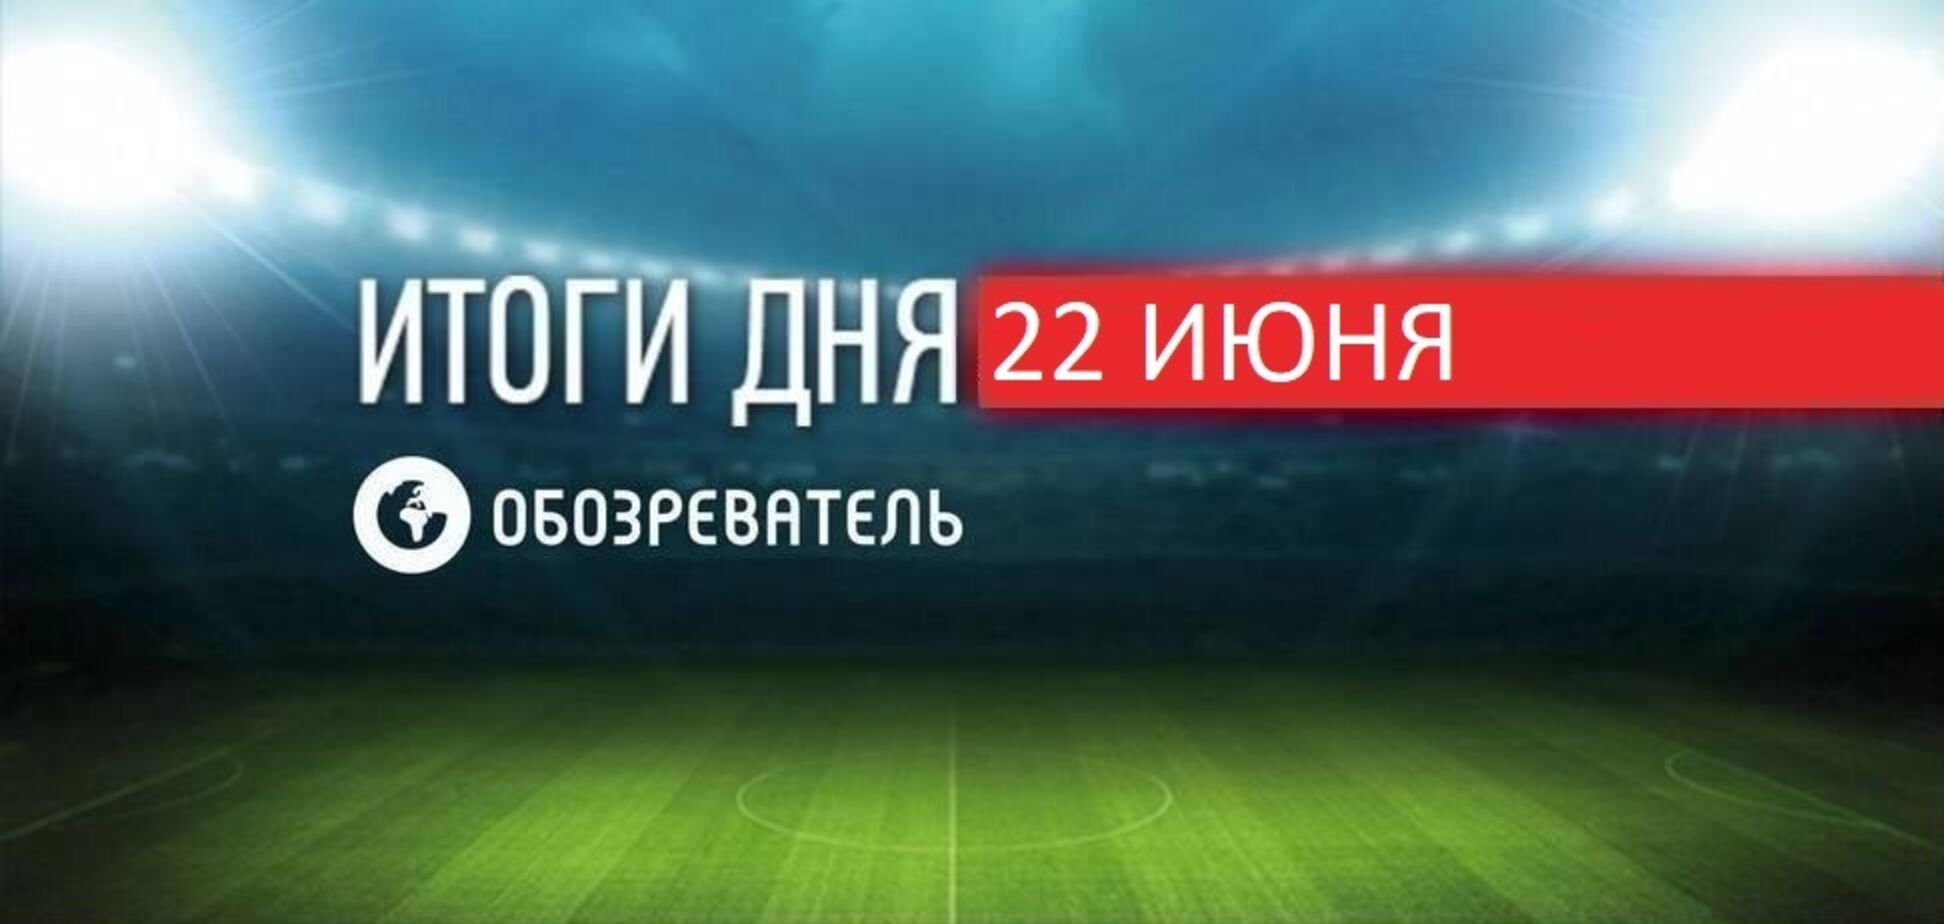 Українців не пустили на матч Євро-2020 з картою Криму: новини спорту 22 червня